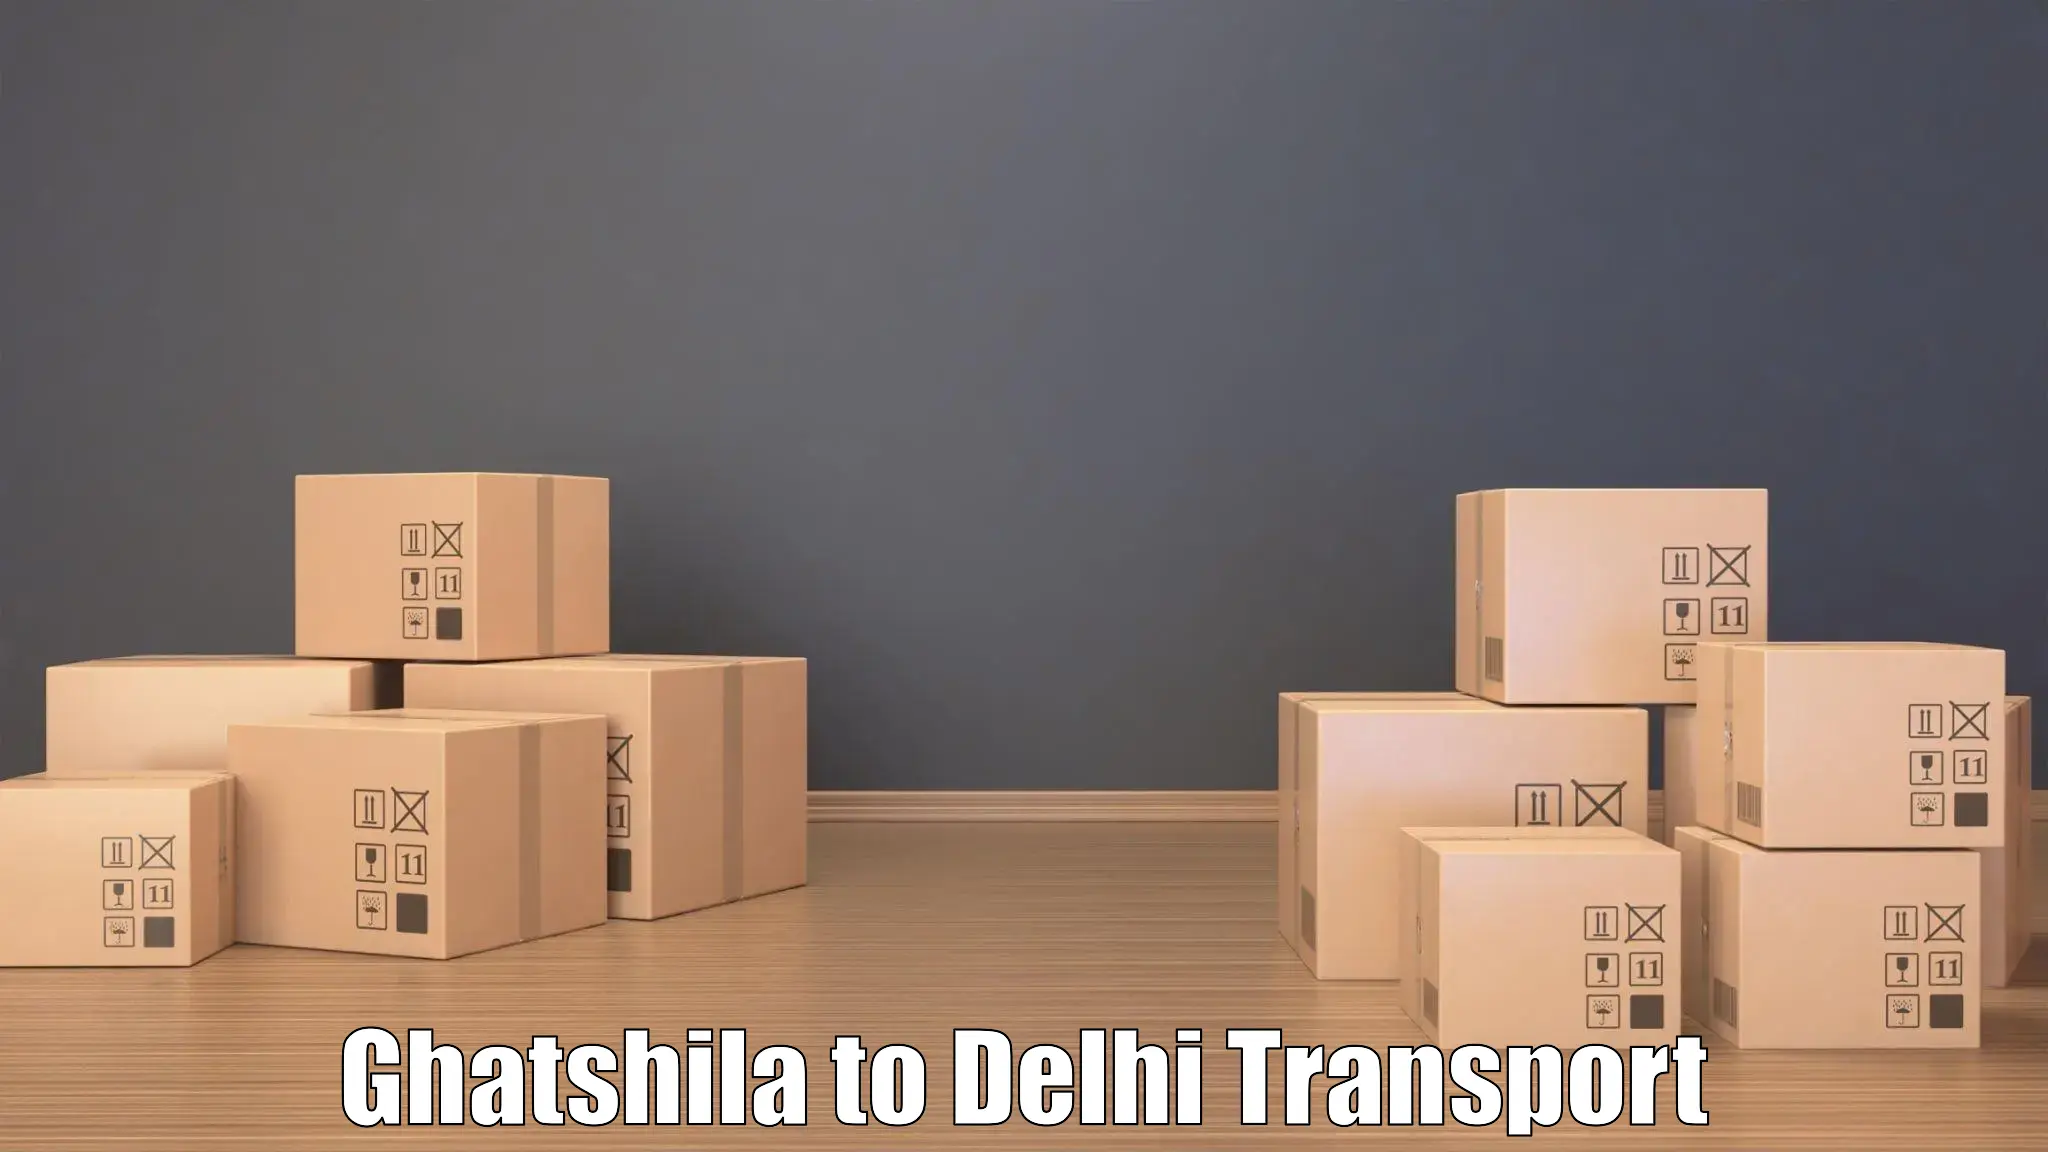 Online transport service Ghatshila to Ashok Vihar